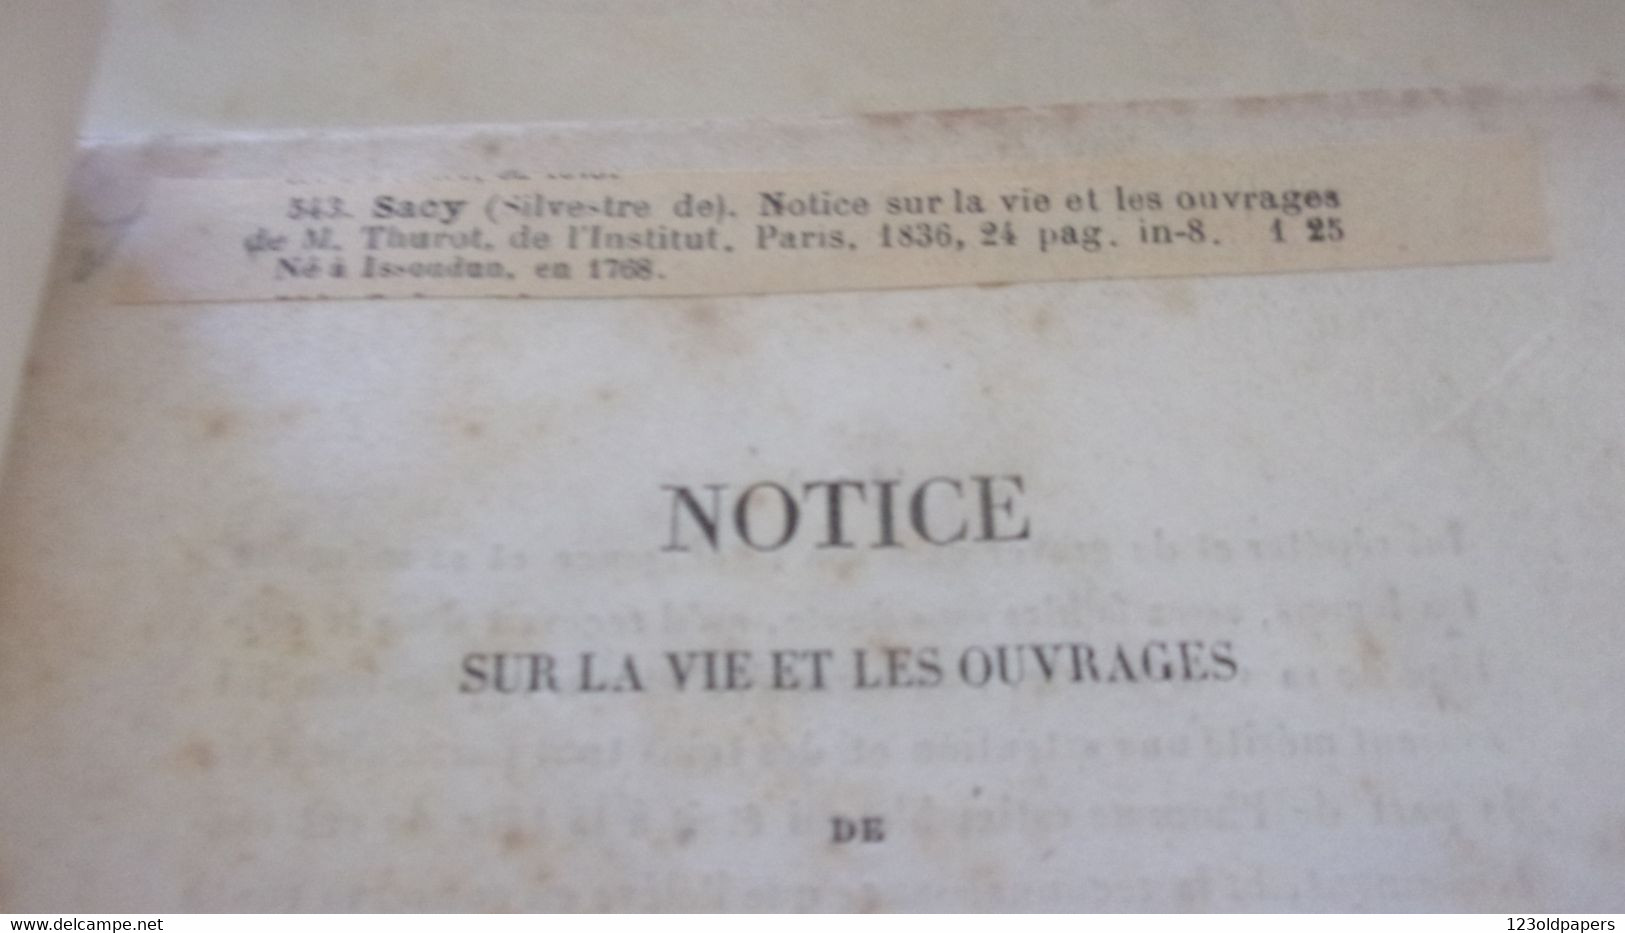 ️1836 INDRE BERRY NOTICE SUR LA VIE  ET OUVRAGES  DE M THUROT NE ISSOUDUN PAR BARON SILVESTRE DE SACY️ - 1801-1900